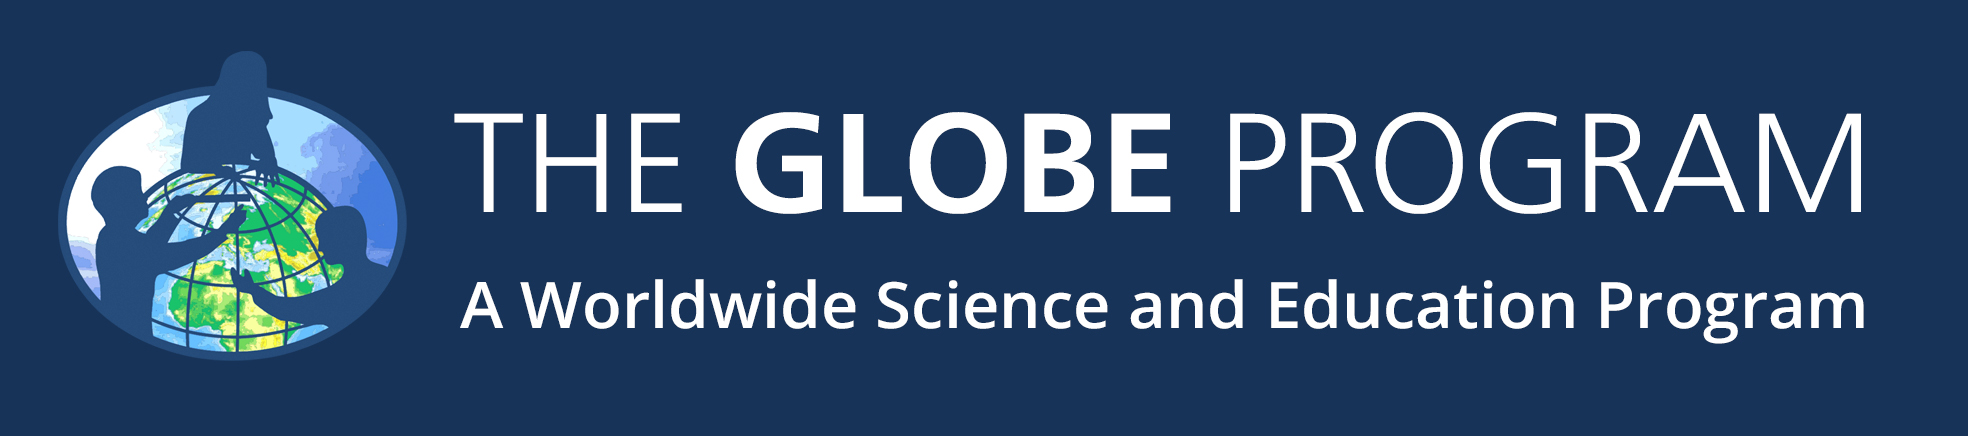 globe logo - blue background